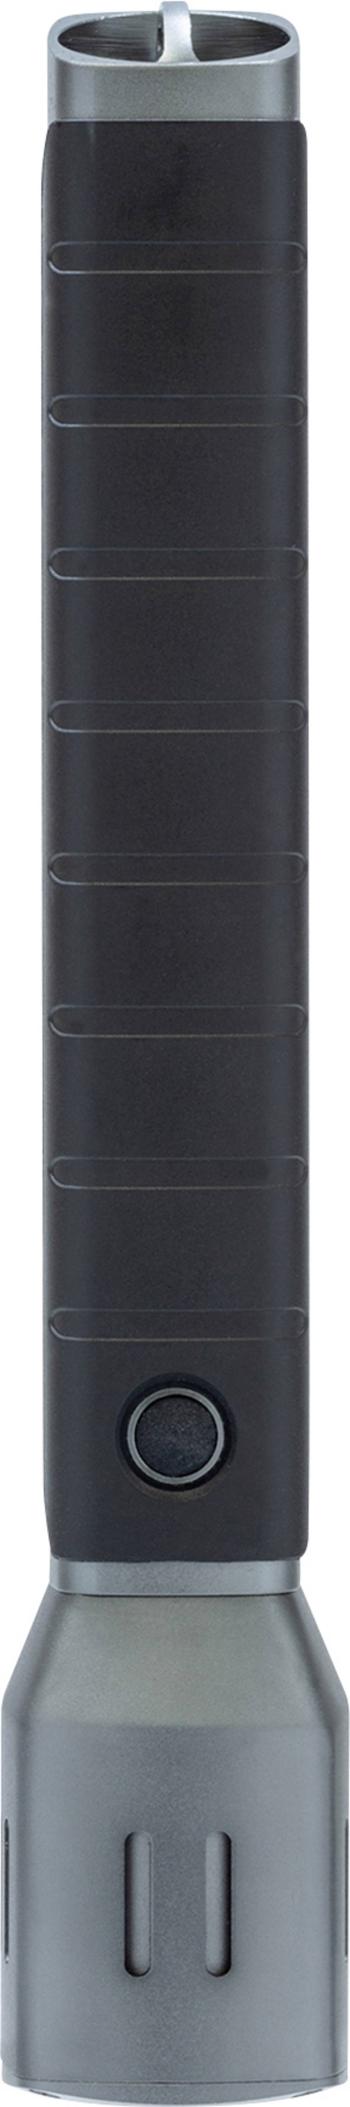 ABUS TL-525 LED  vreckové svietidlo (baterka)  na batérie 500 lm 5.5 h 380 g